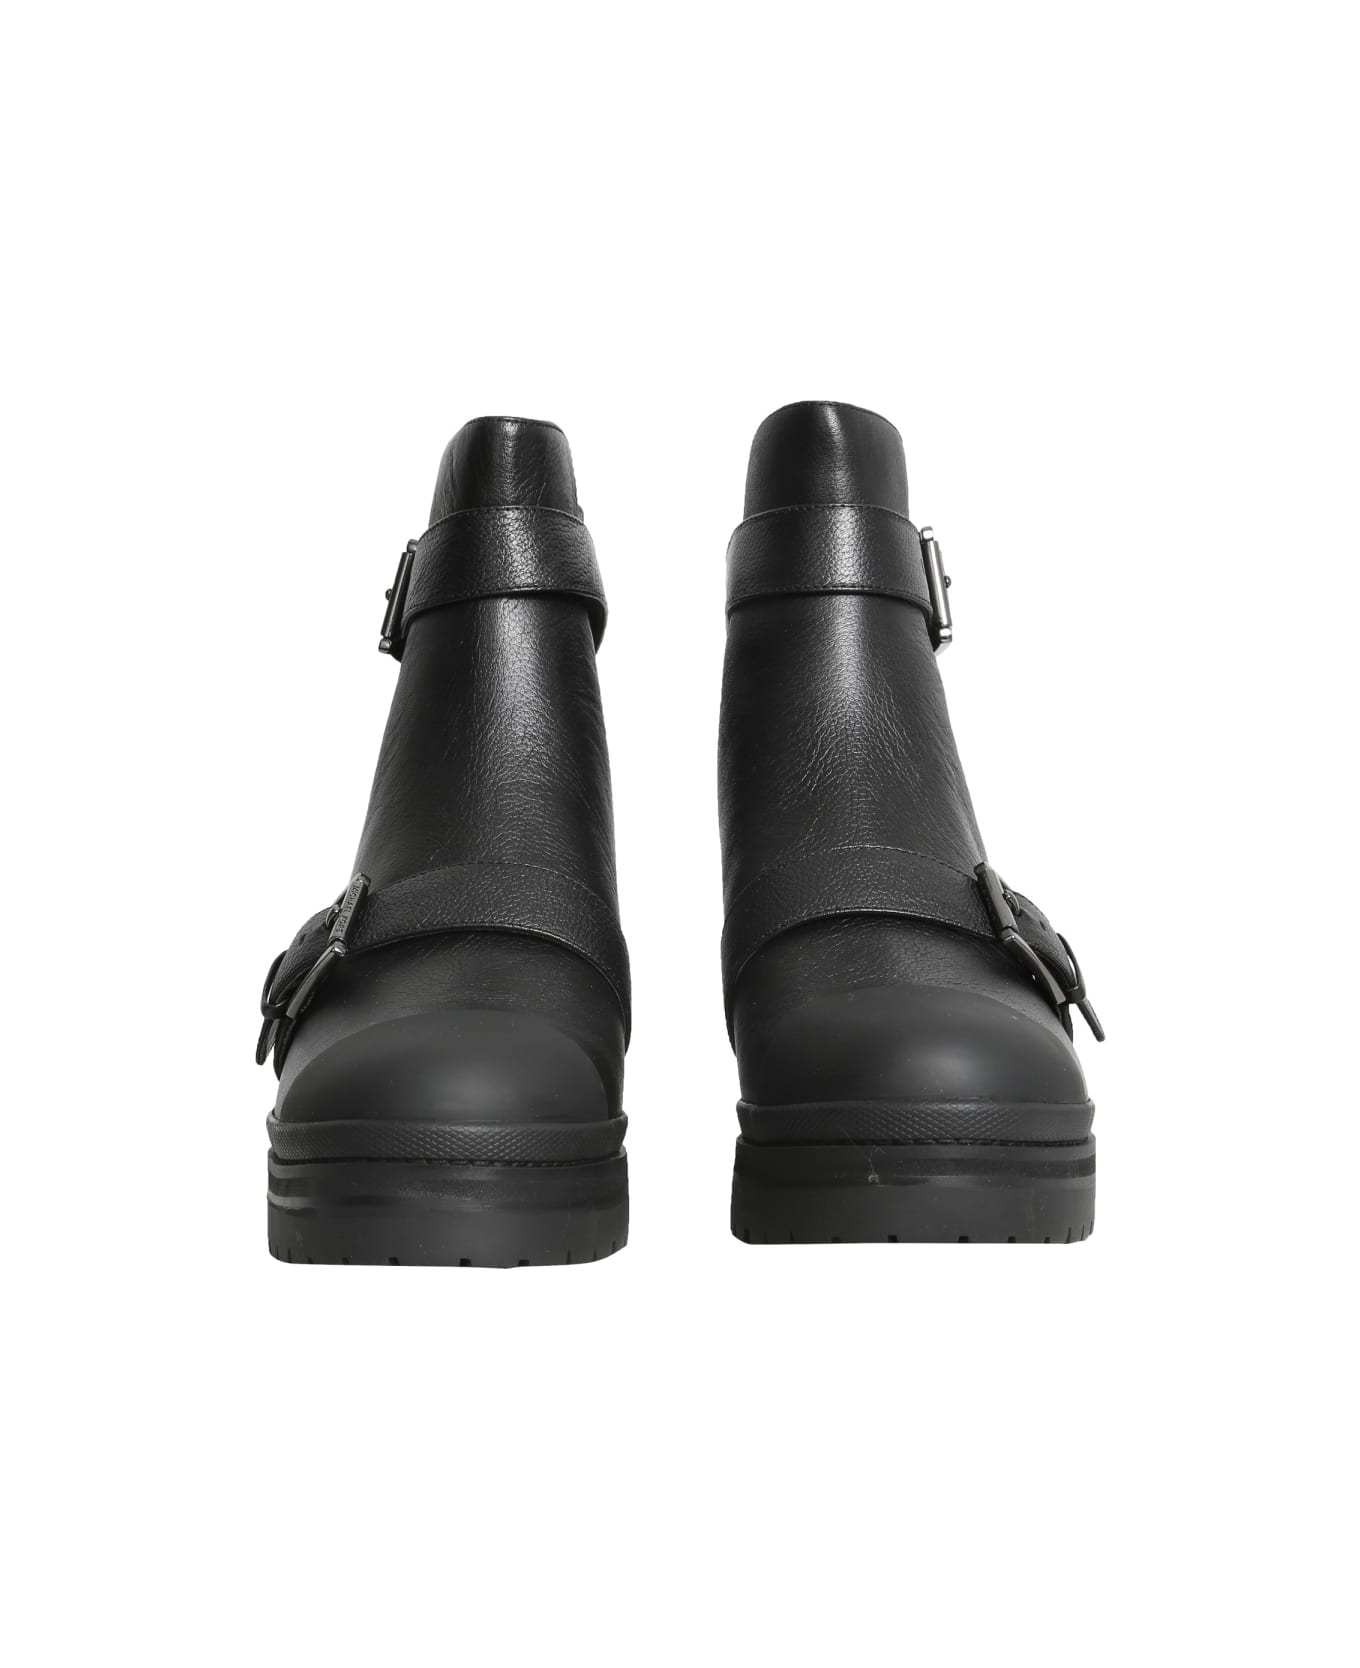 Michael Kors Corey Boots - BLACK ブーツ